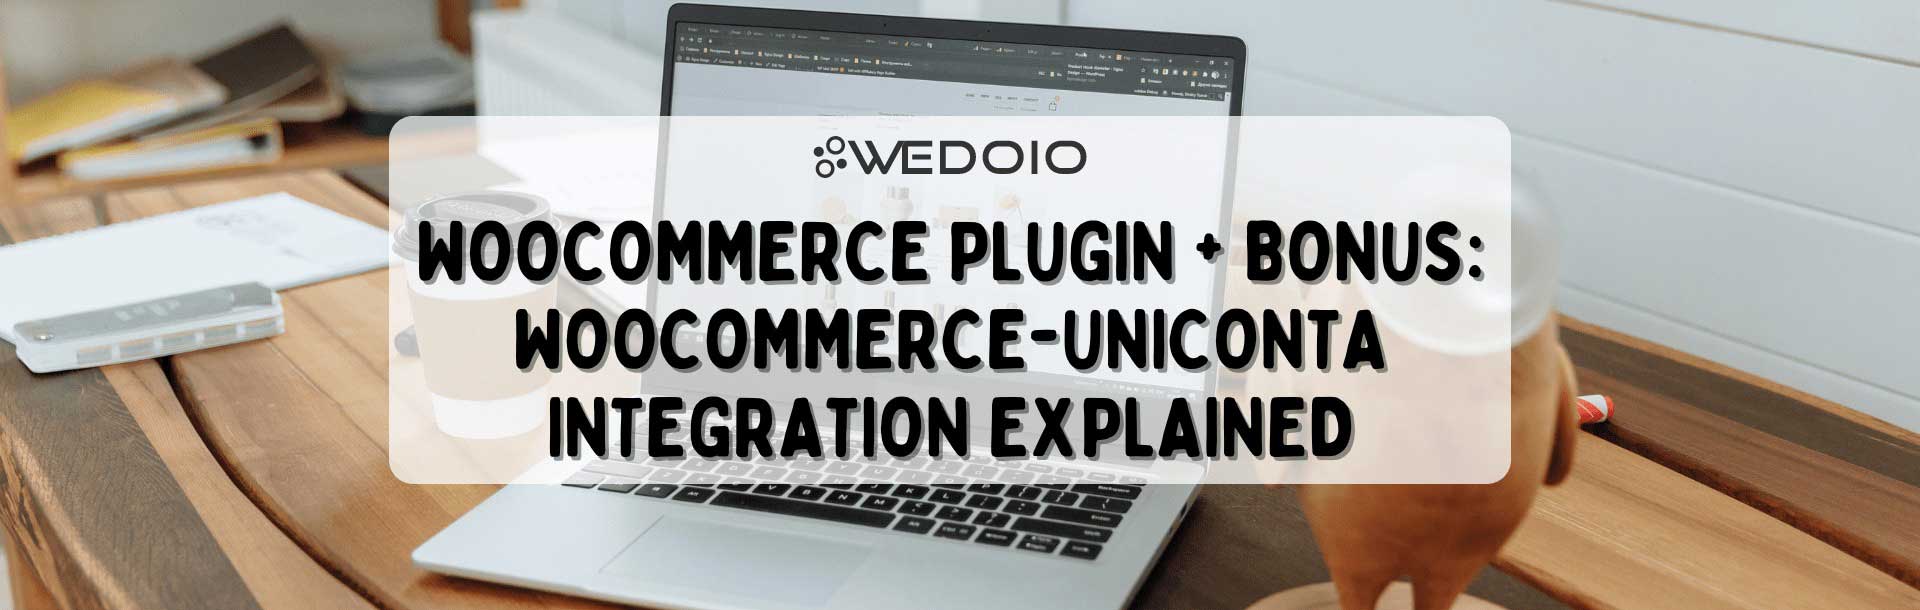 WooCommerce Plugin + Bonus: WooCommerce-Uniconta Integration Explained